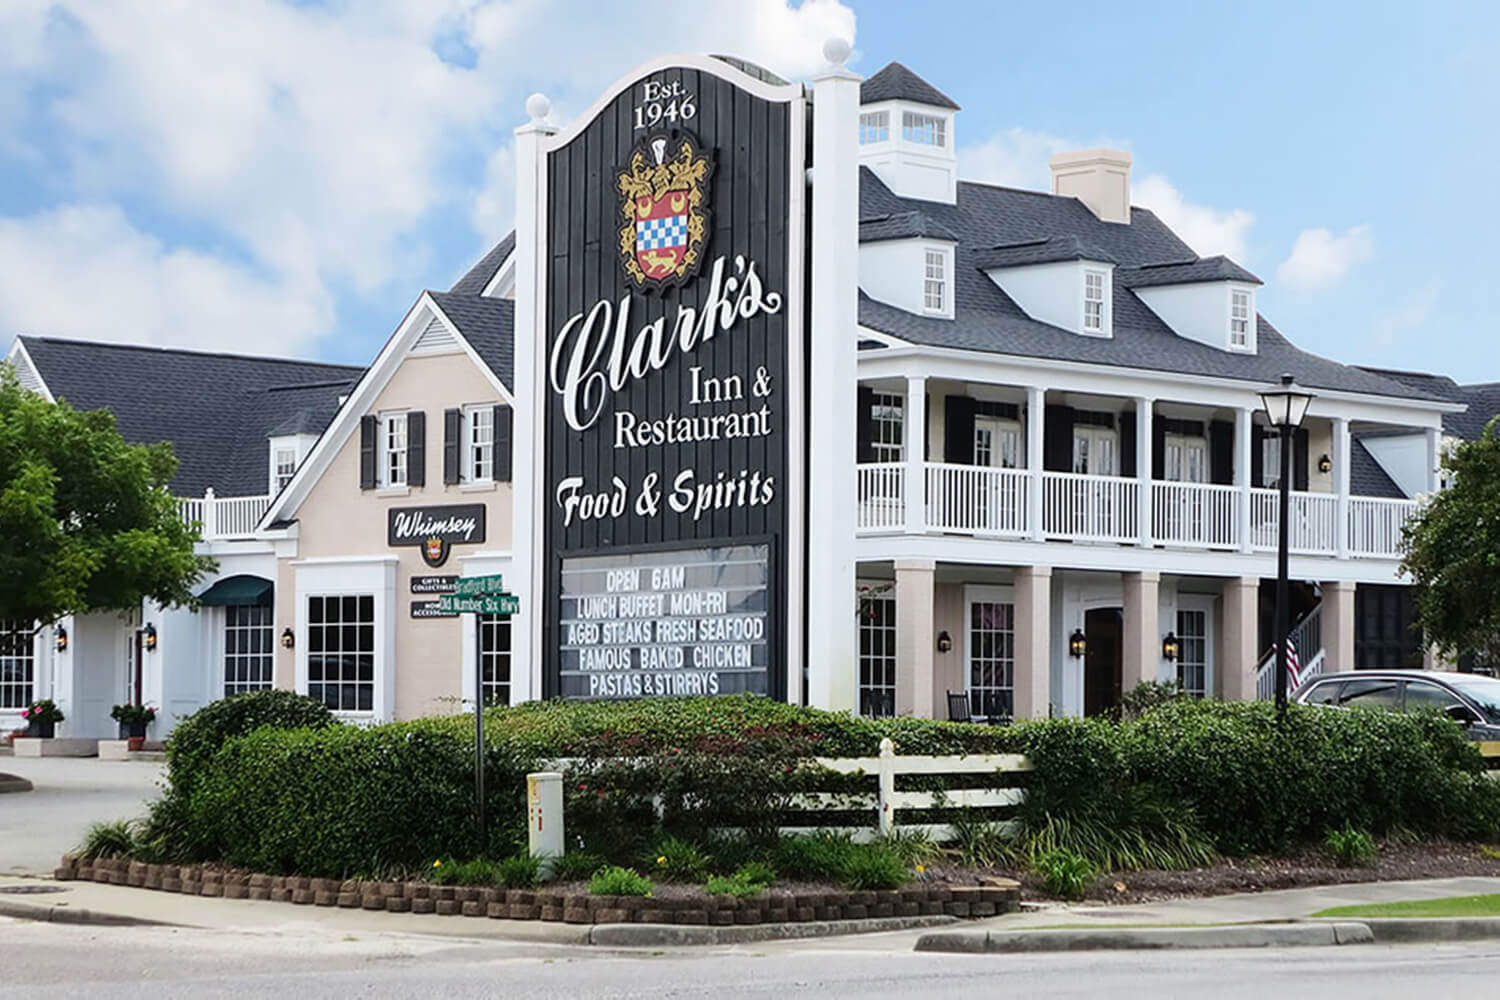 Clark's Restaurant and Inn